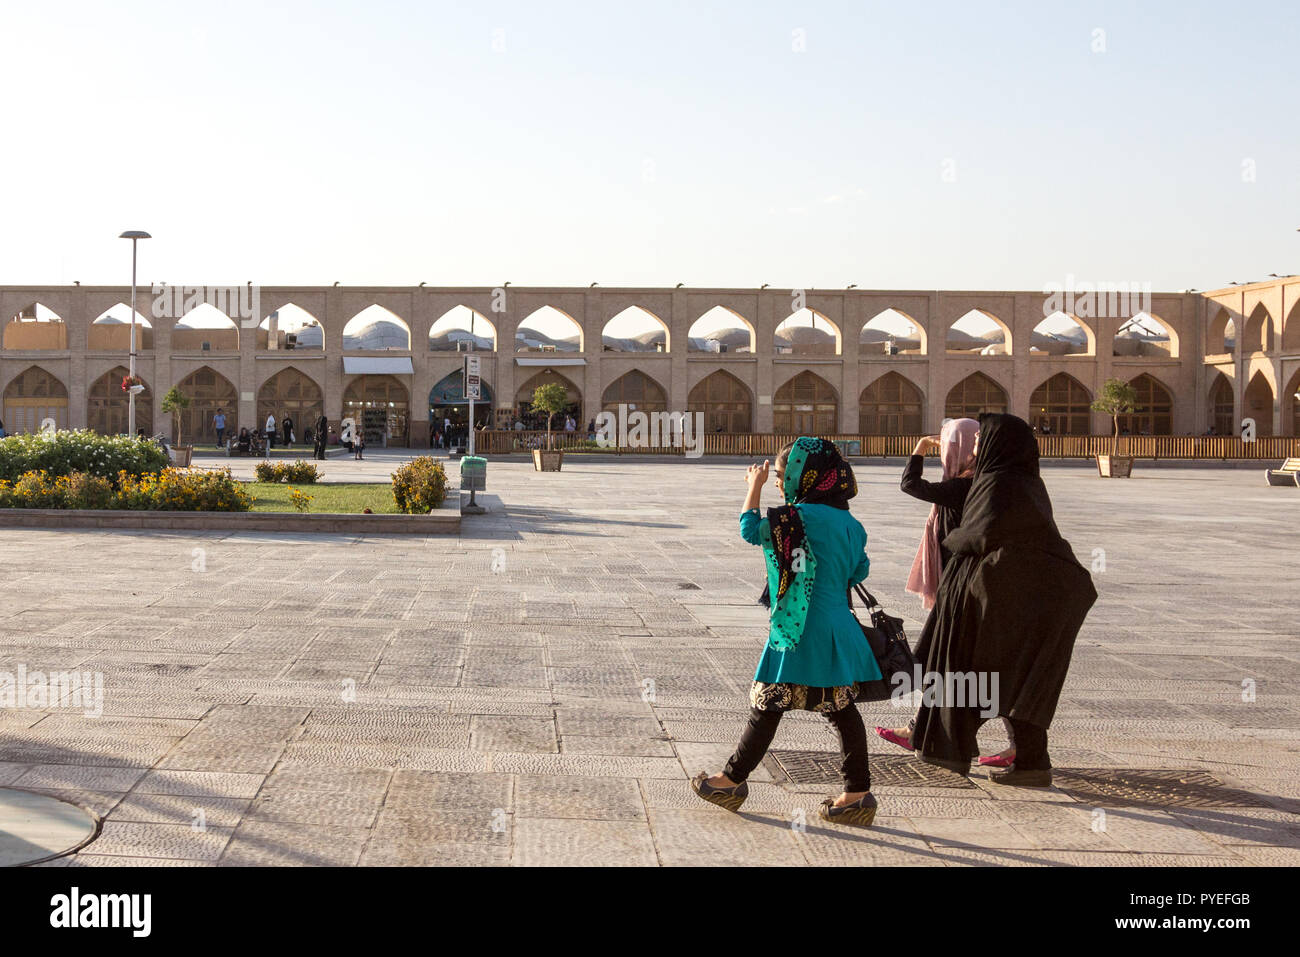 ISFAHAN, IRAN - 20 agosto 2016: Le donne indossano modesto abbigliamento islamico, sciarpa islamica, velo hijab e camminare lungo le strade di Isfahan, Iran, su Imam Foto Stock